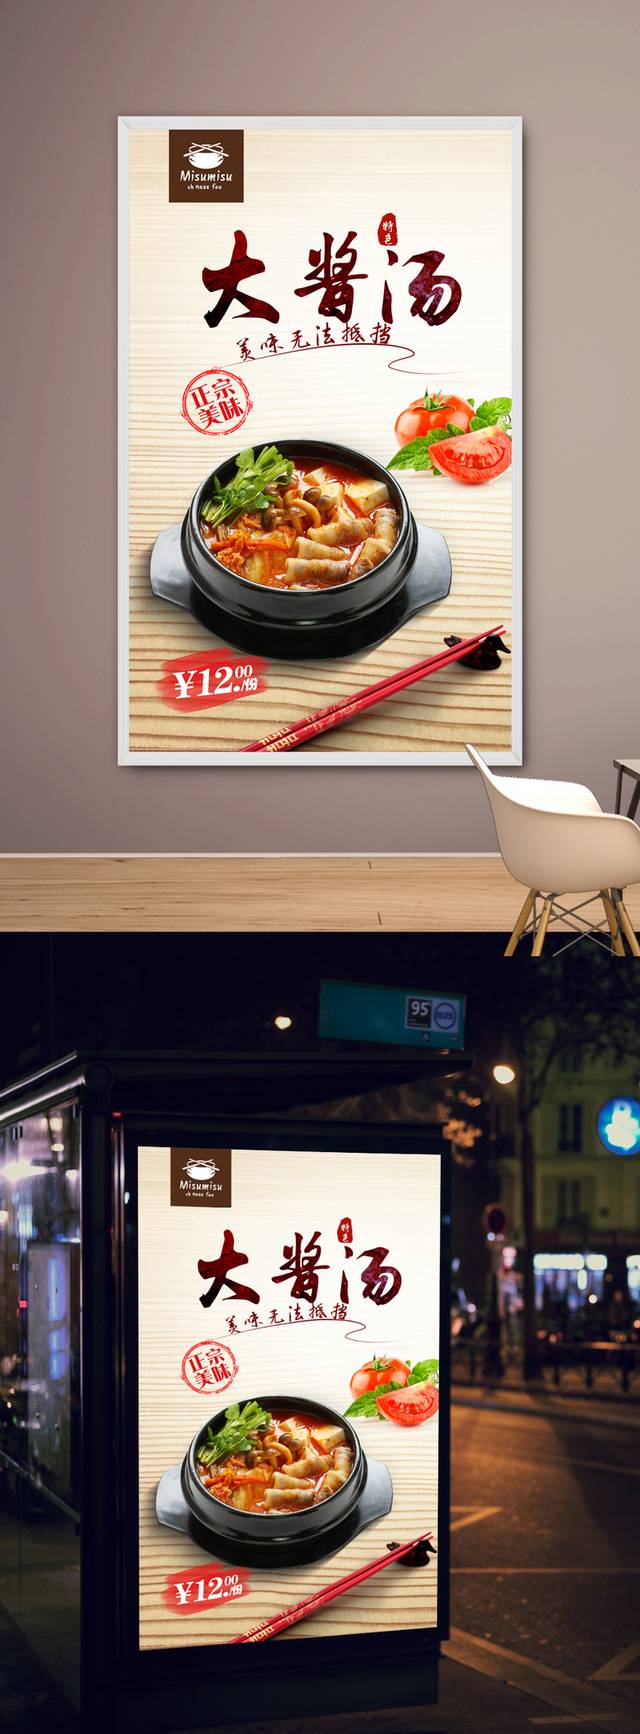 韩国大酱汤促销海报设计